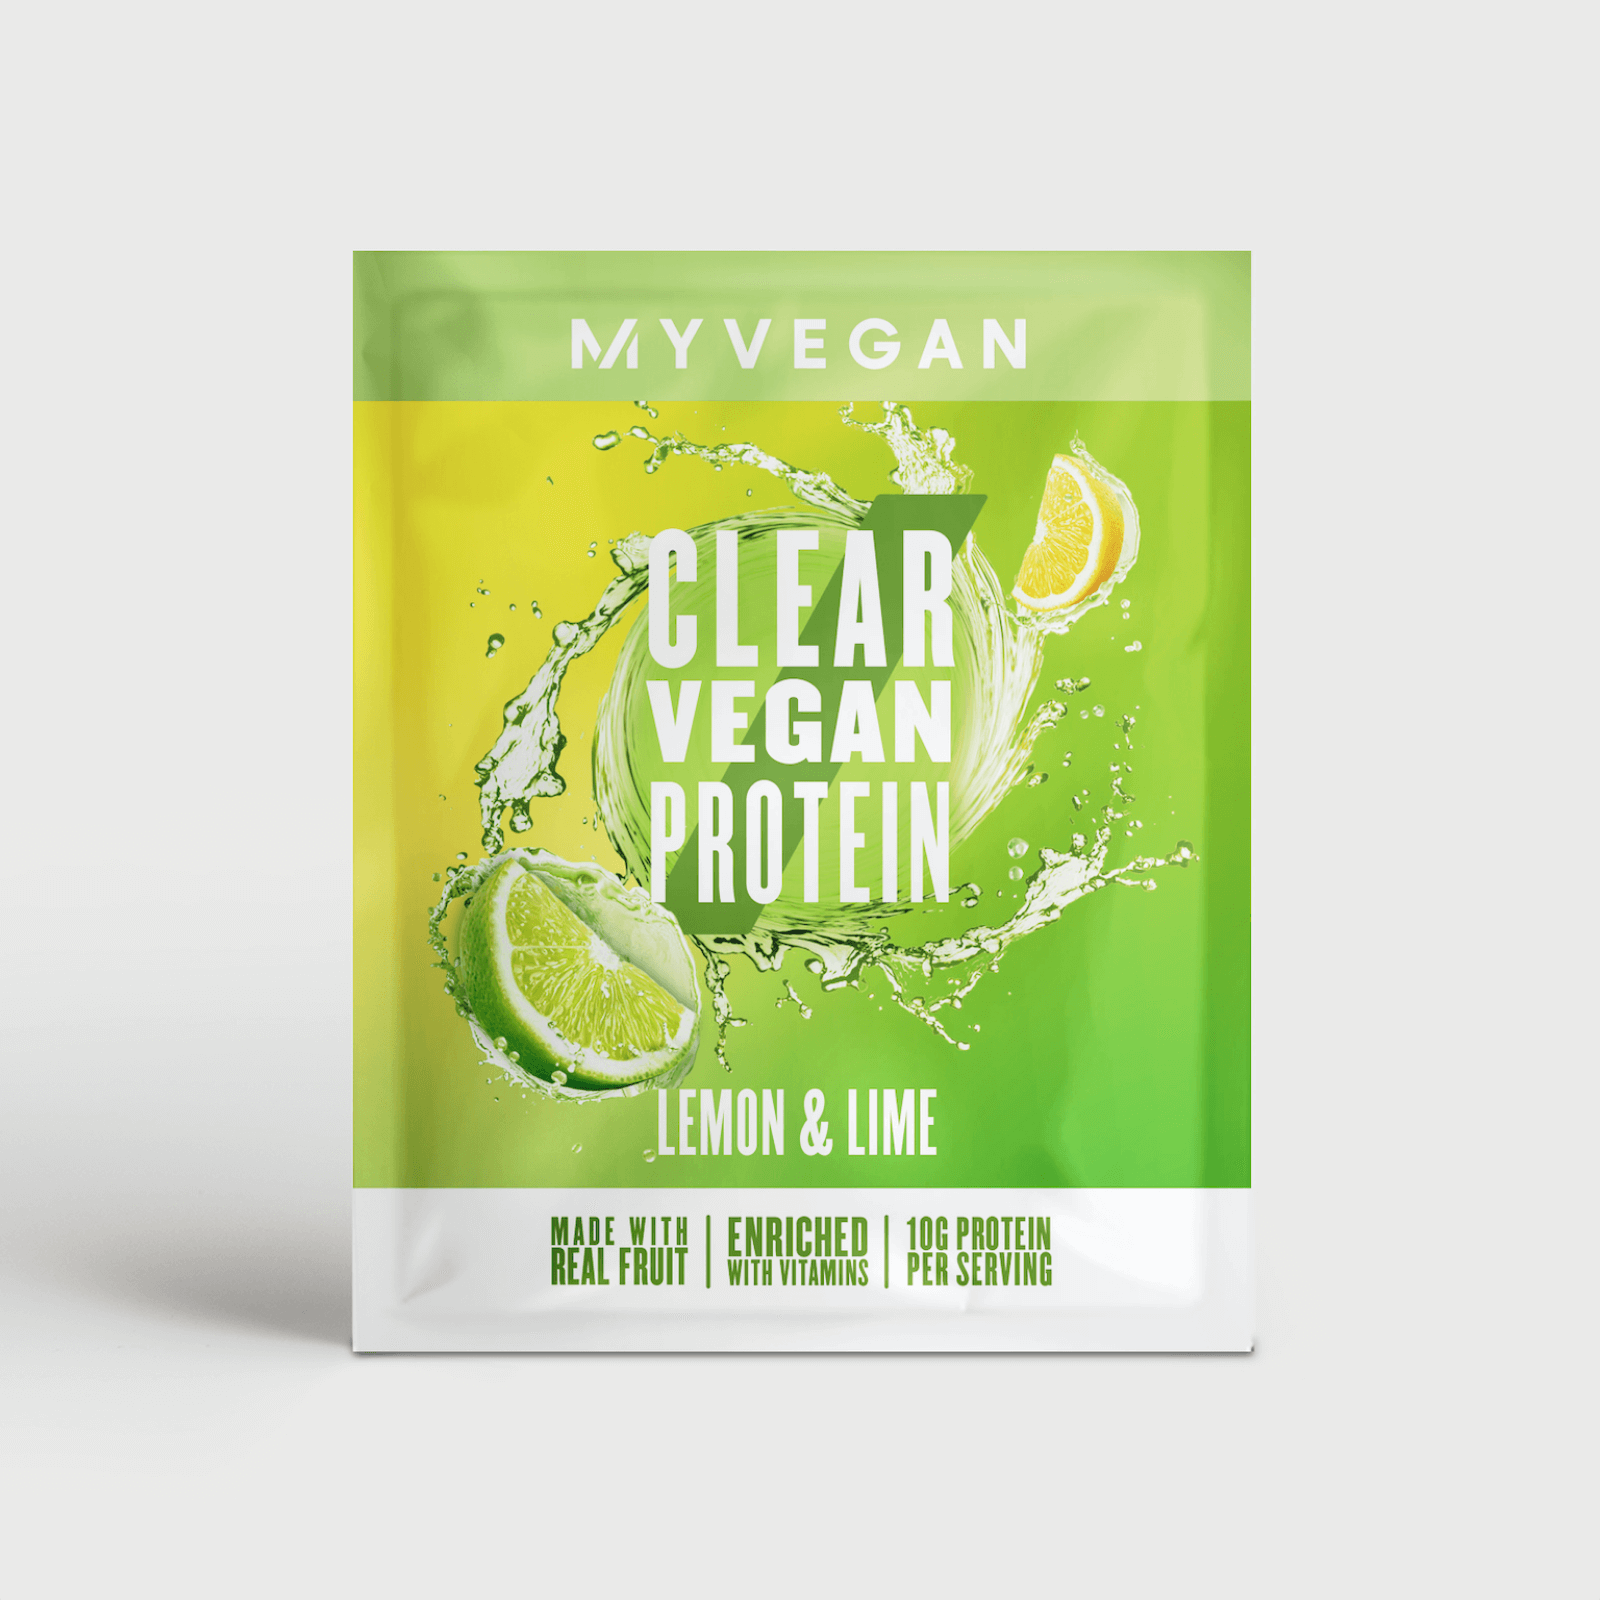 Myvegan Clear Vegan Protein, 16g (Sample) - 16g - Chanh ta và chanh tây